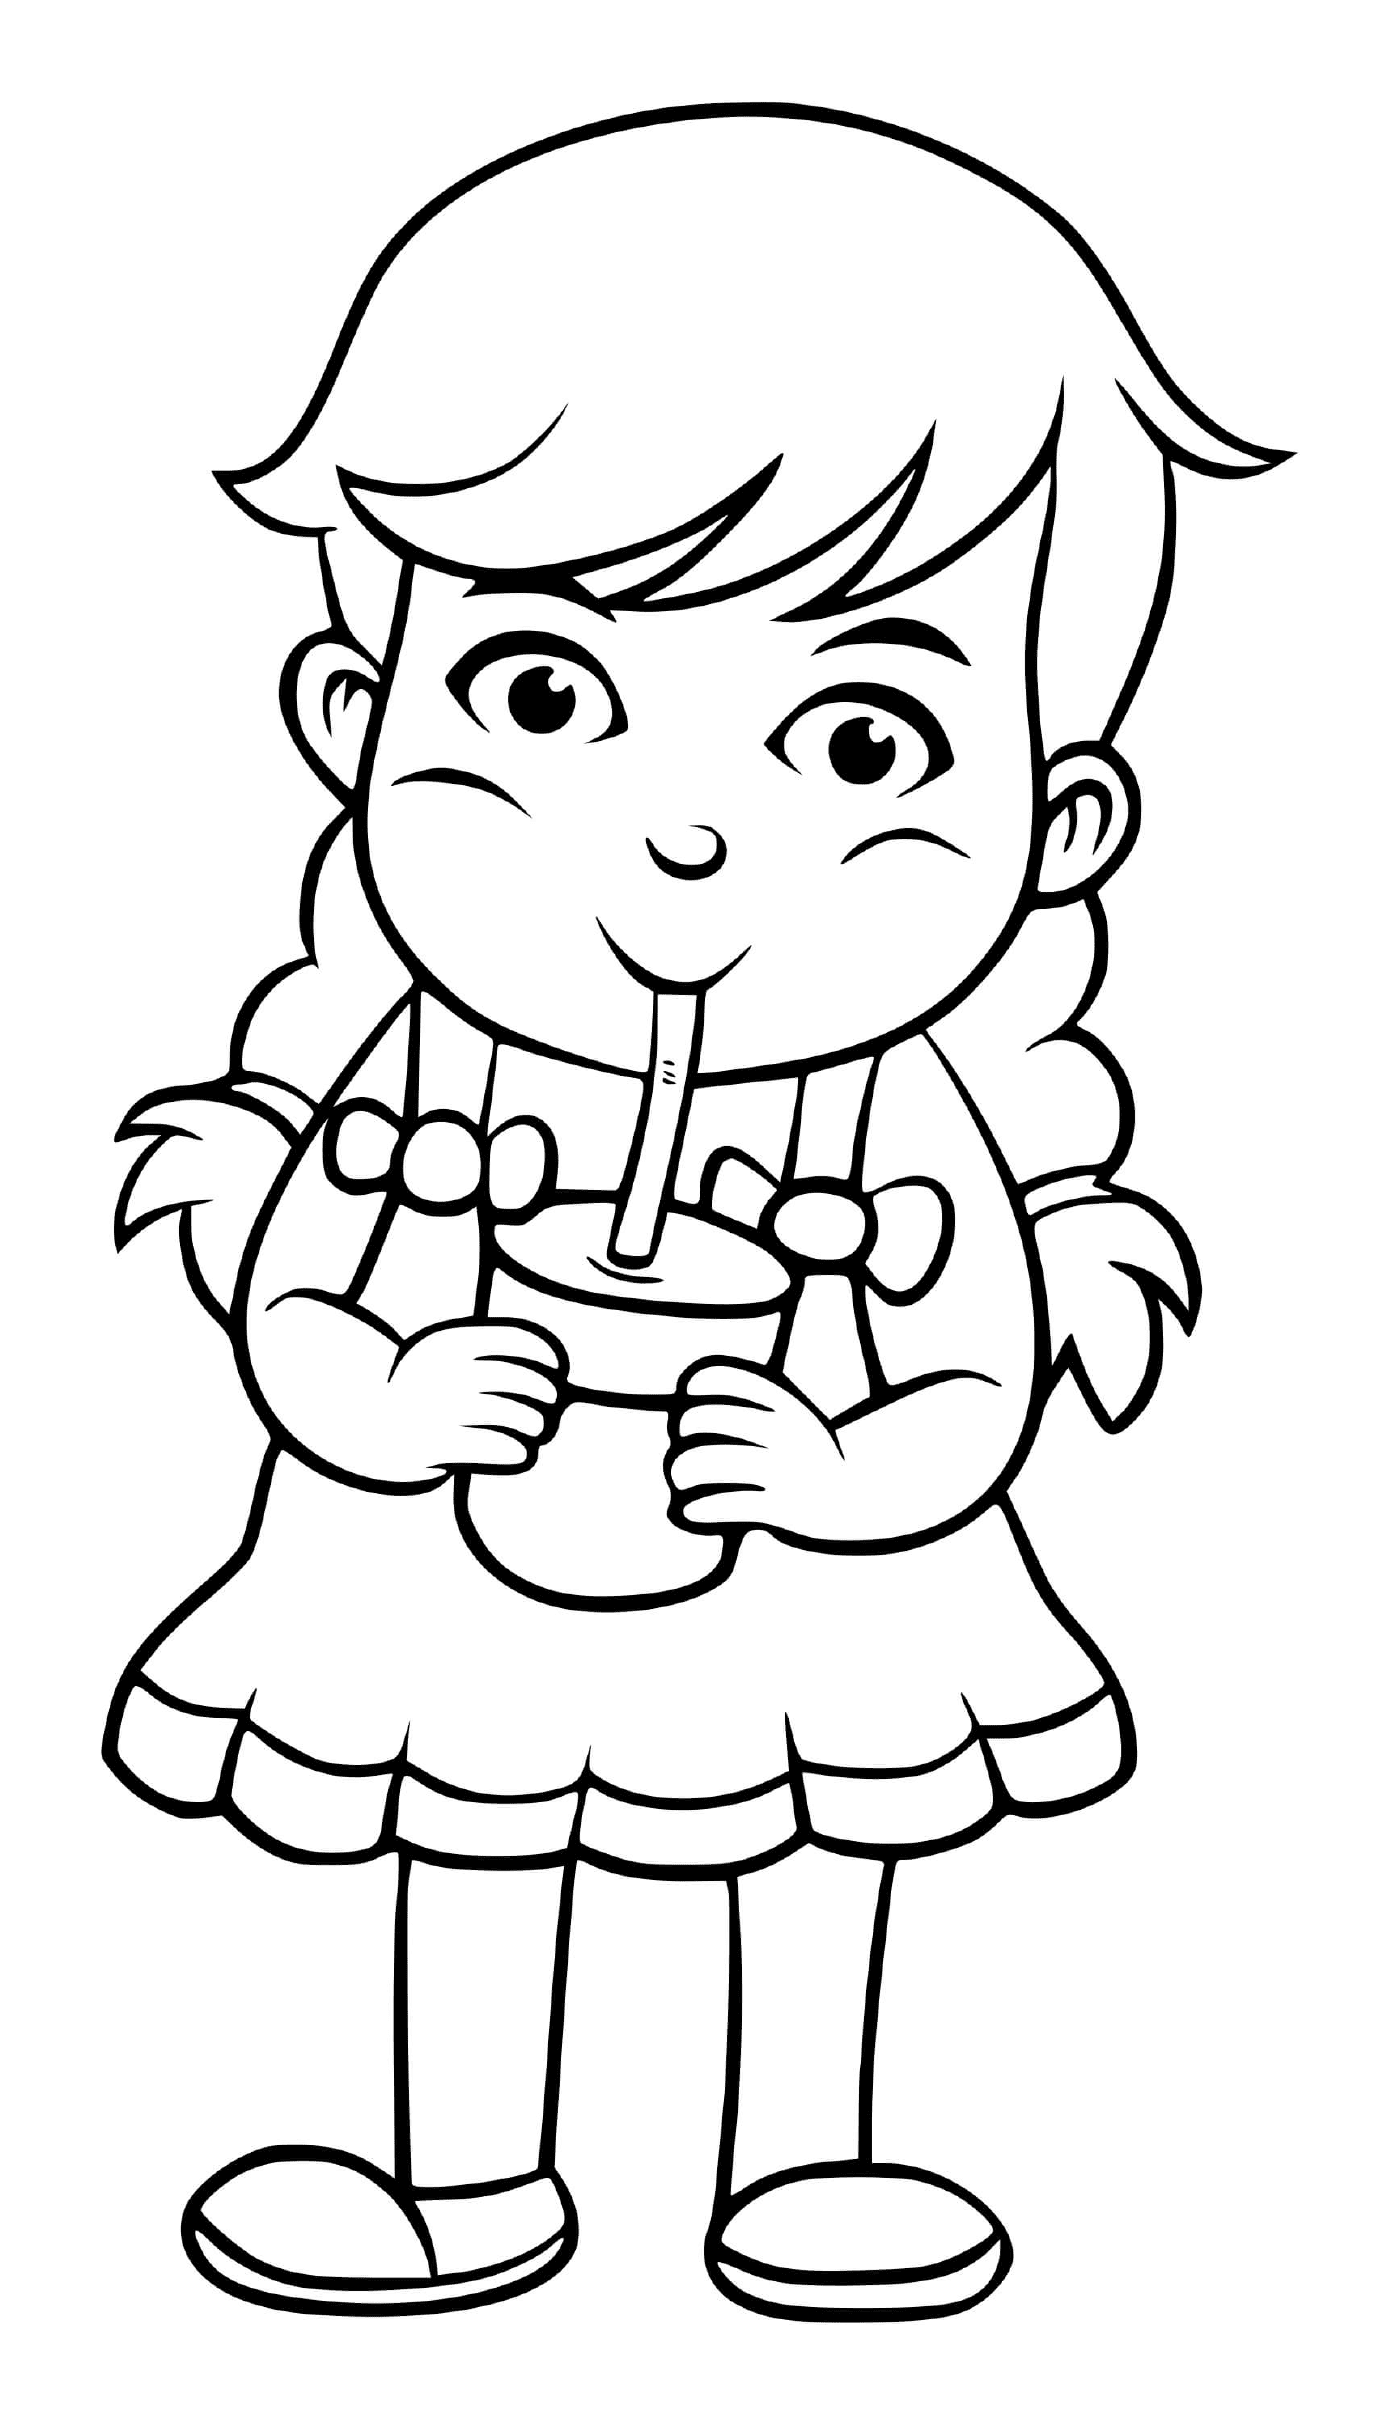  Una ragazza beve acqua per rimanere idratata e in forma 